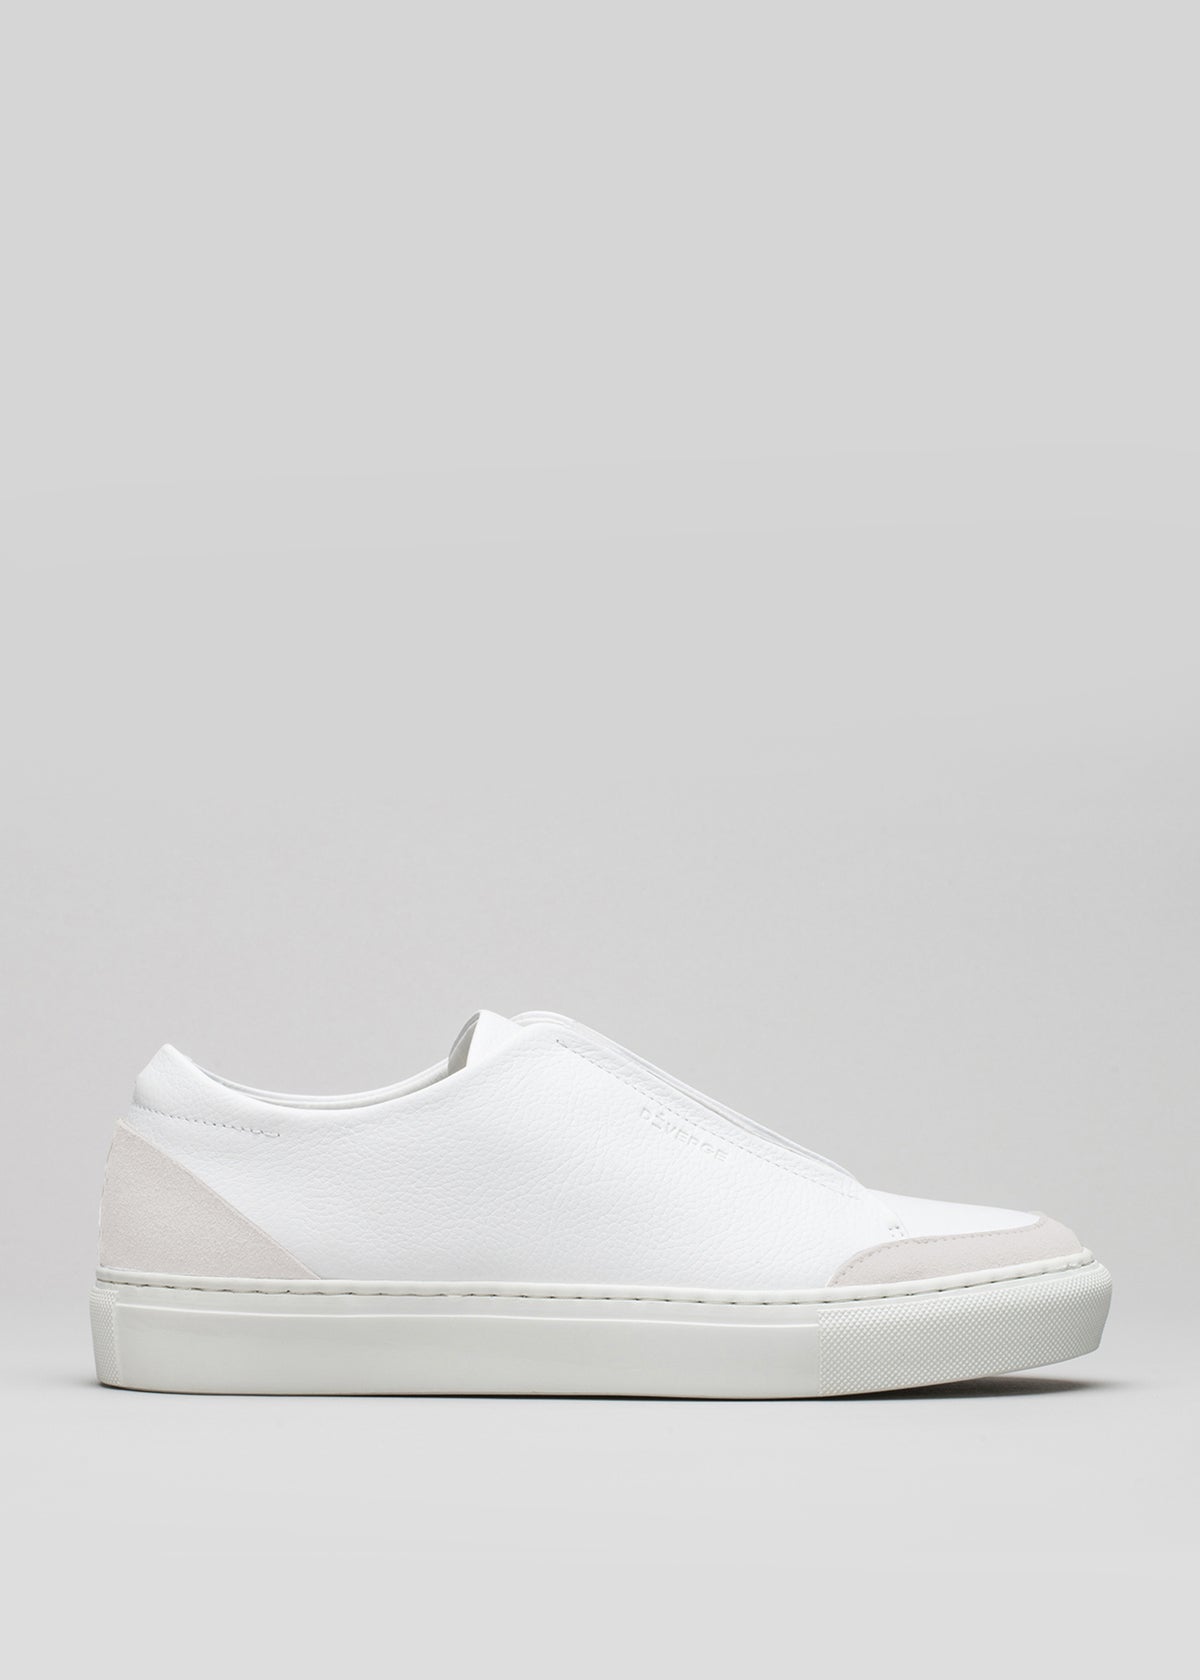 Beginnen Sie mit einem Slip-on aus weißem Canvas sneakers mit Gummisohle auf grauem Hintergrund.